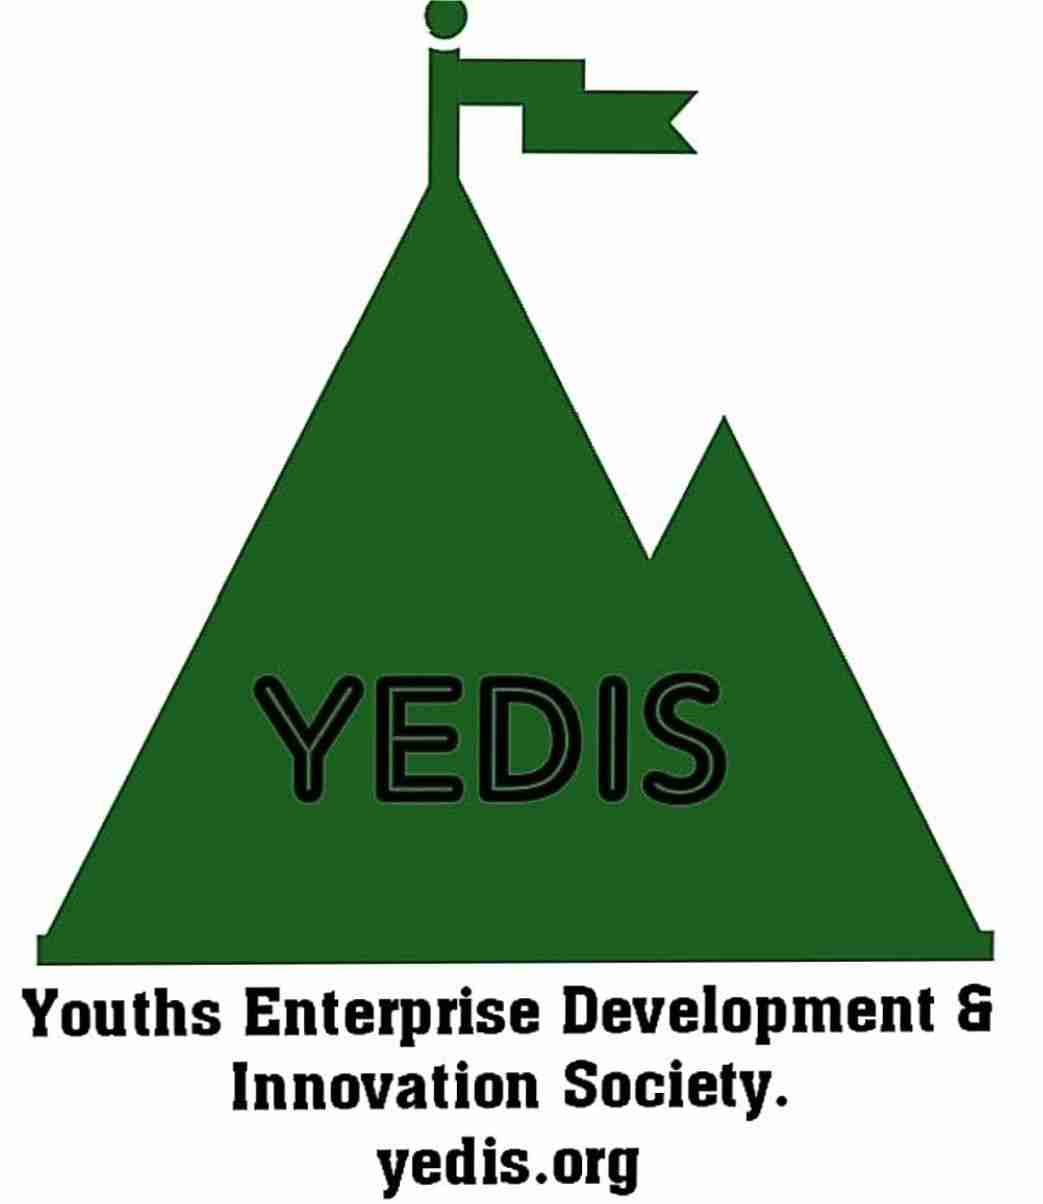 Youths Enterprise Development & Innovation Society